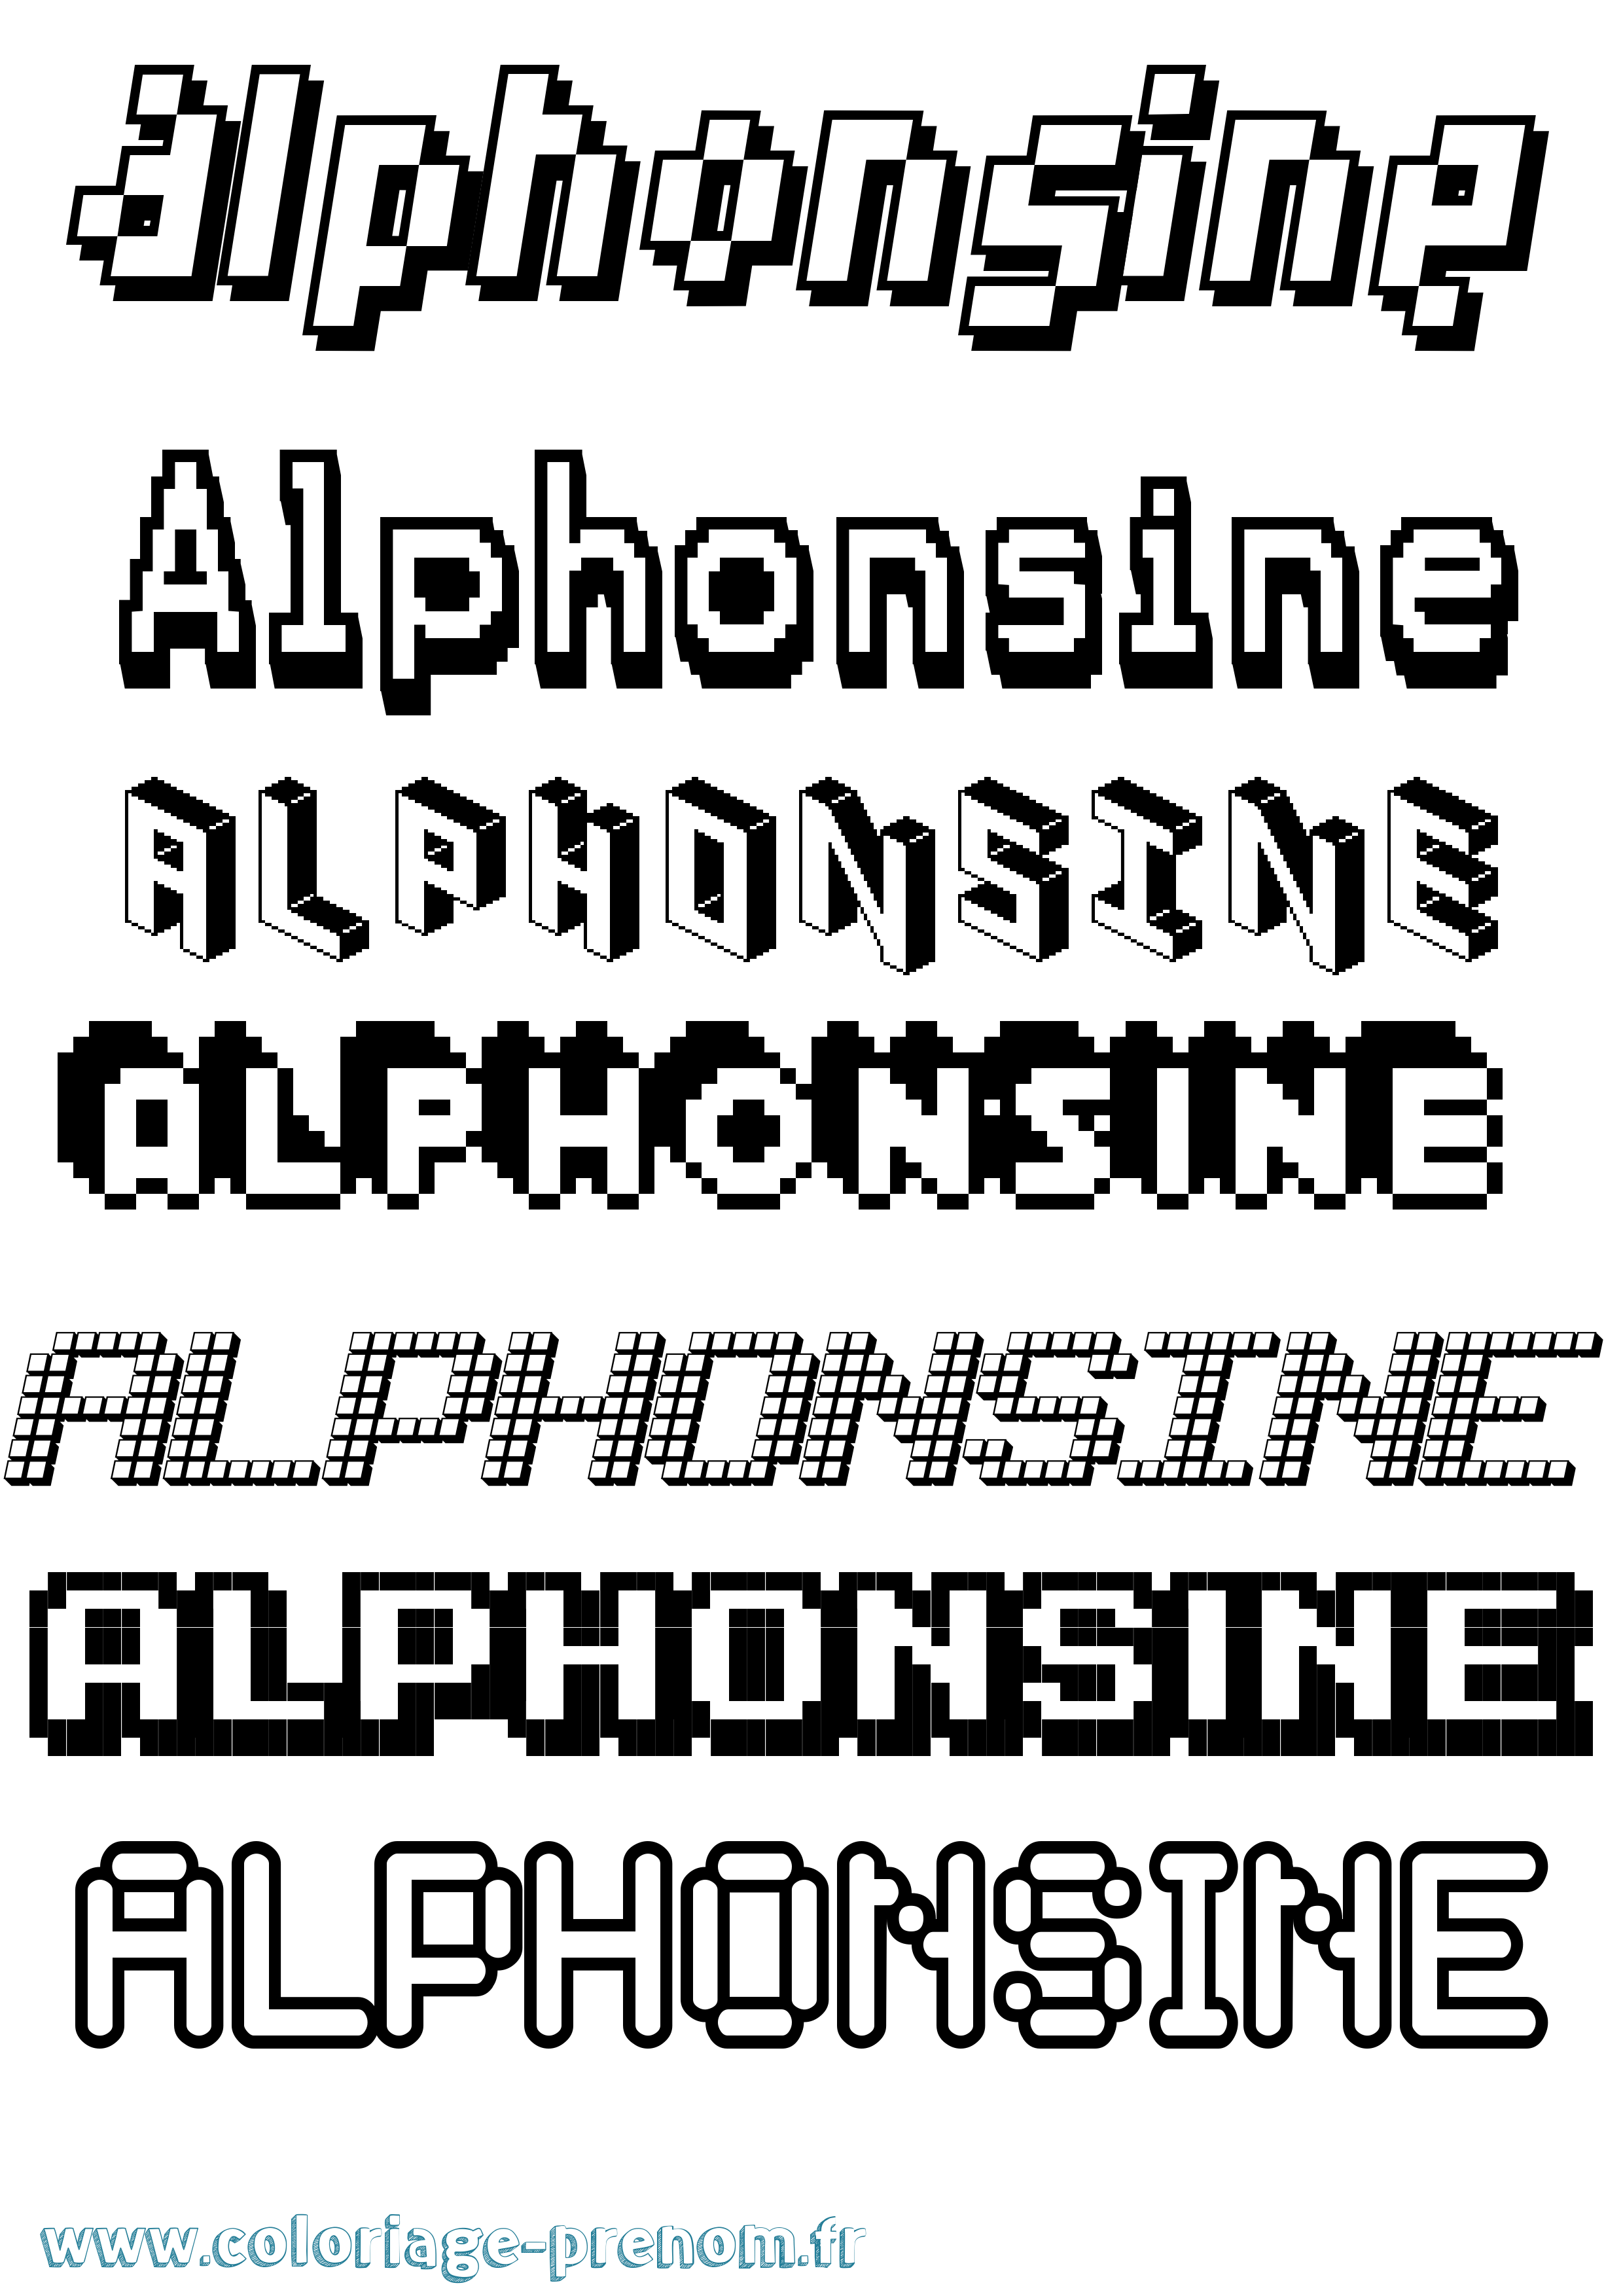 Coloriage prénom Alphonsine Pixel